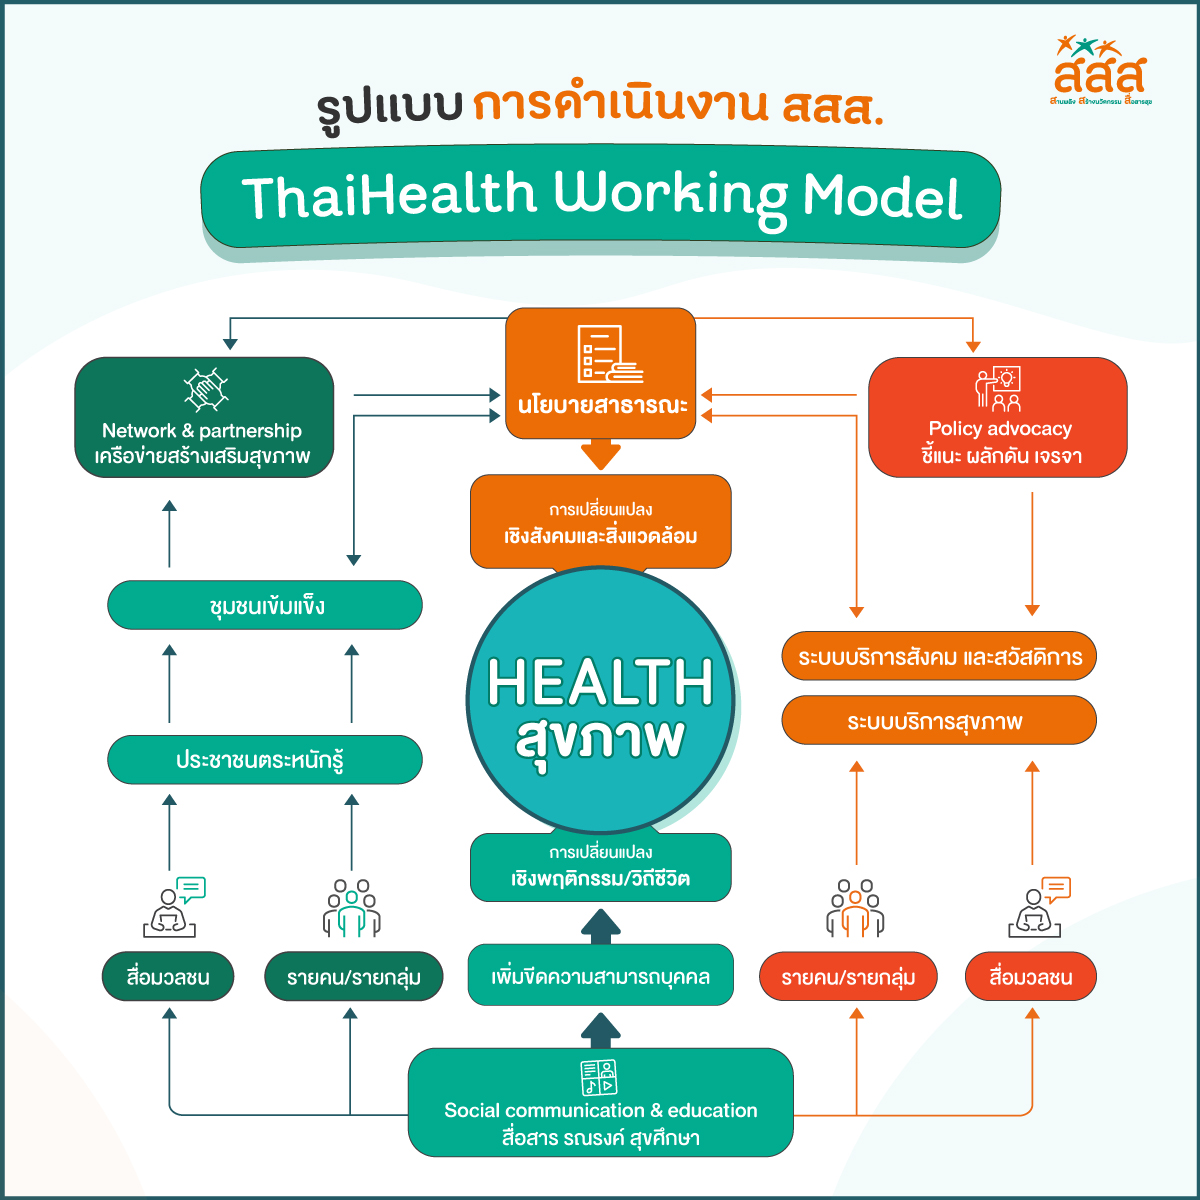 รูปแบบการดำเนินงาน สสส. ThaiHealth Working Model